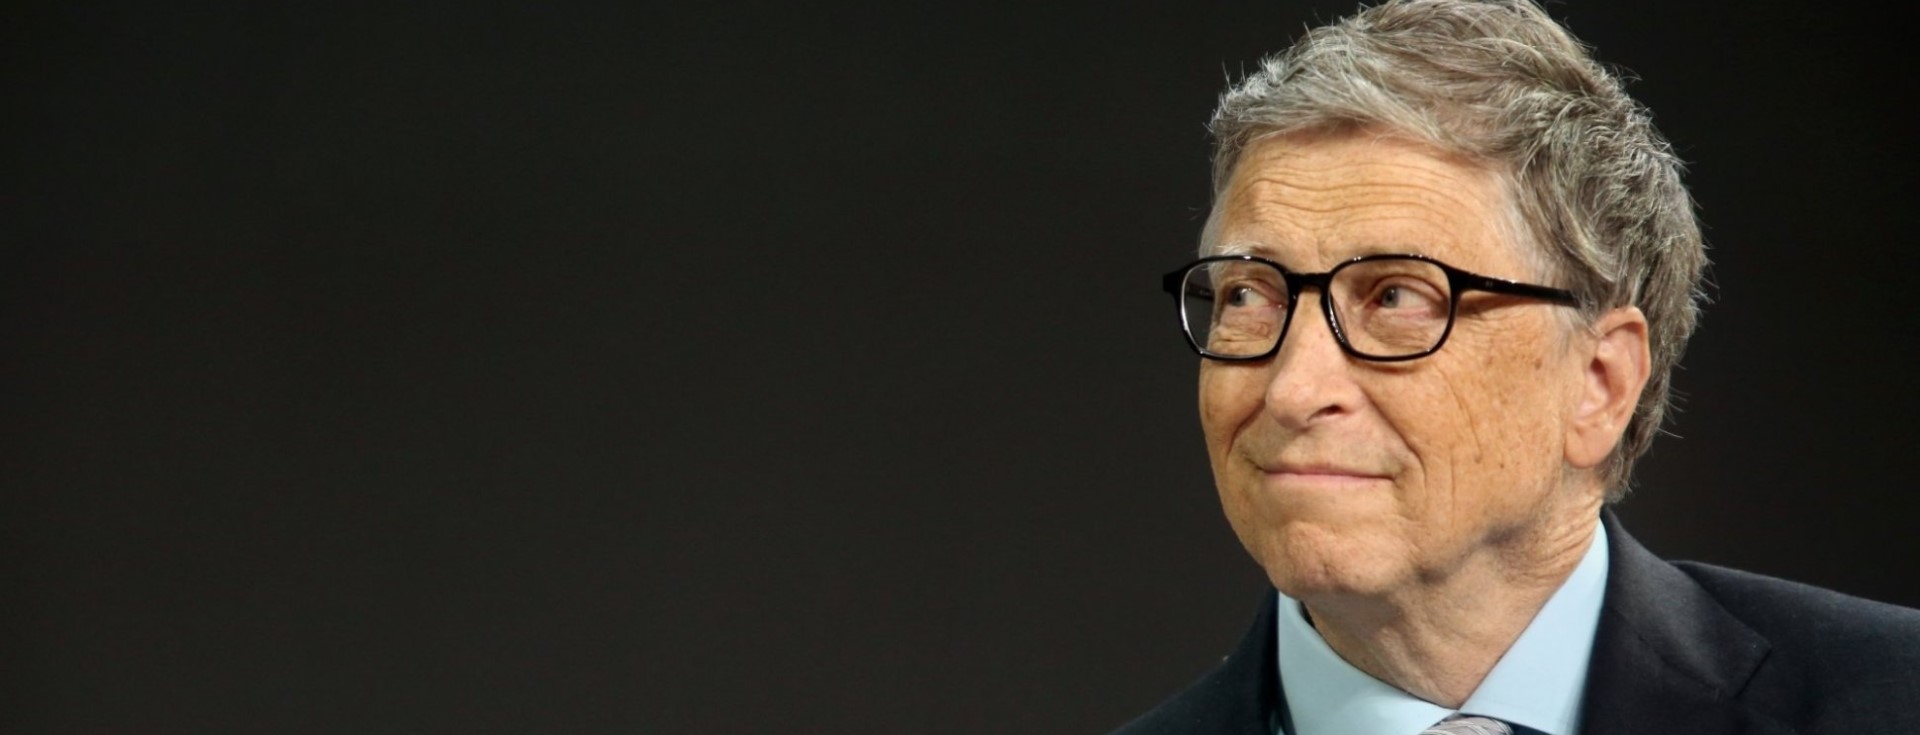 Bill Gates Yaşam Kalitenizi Değerlendirmek İçin Bu 4 Soruyu Tavsiye Ediyor